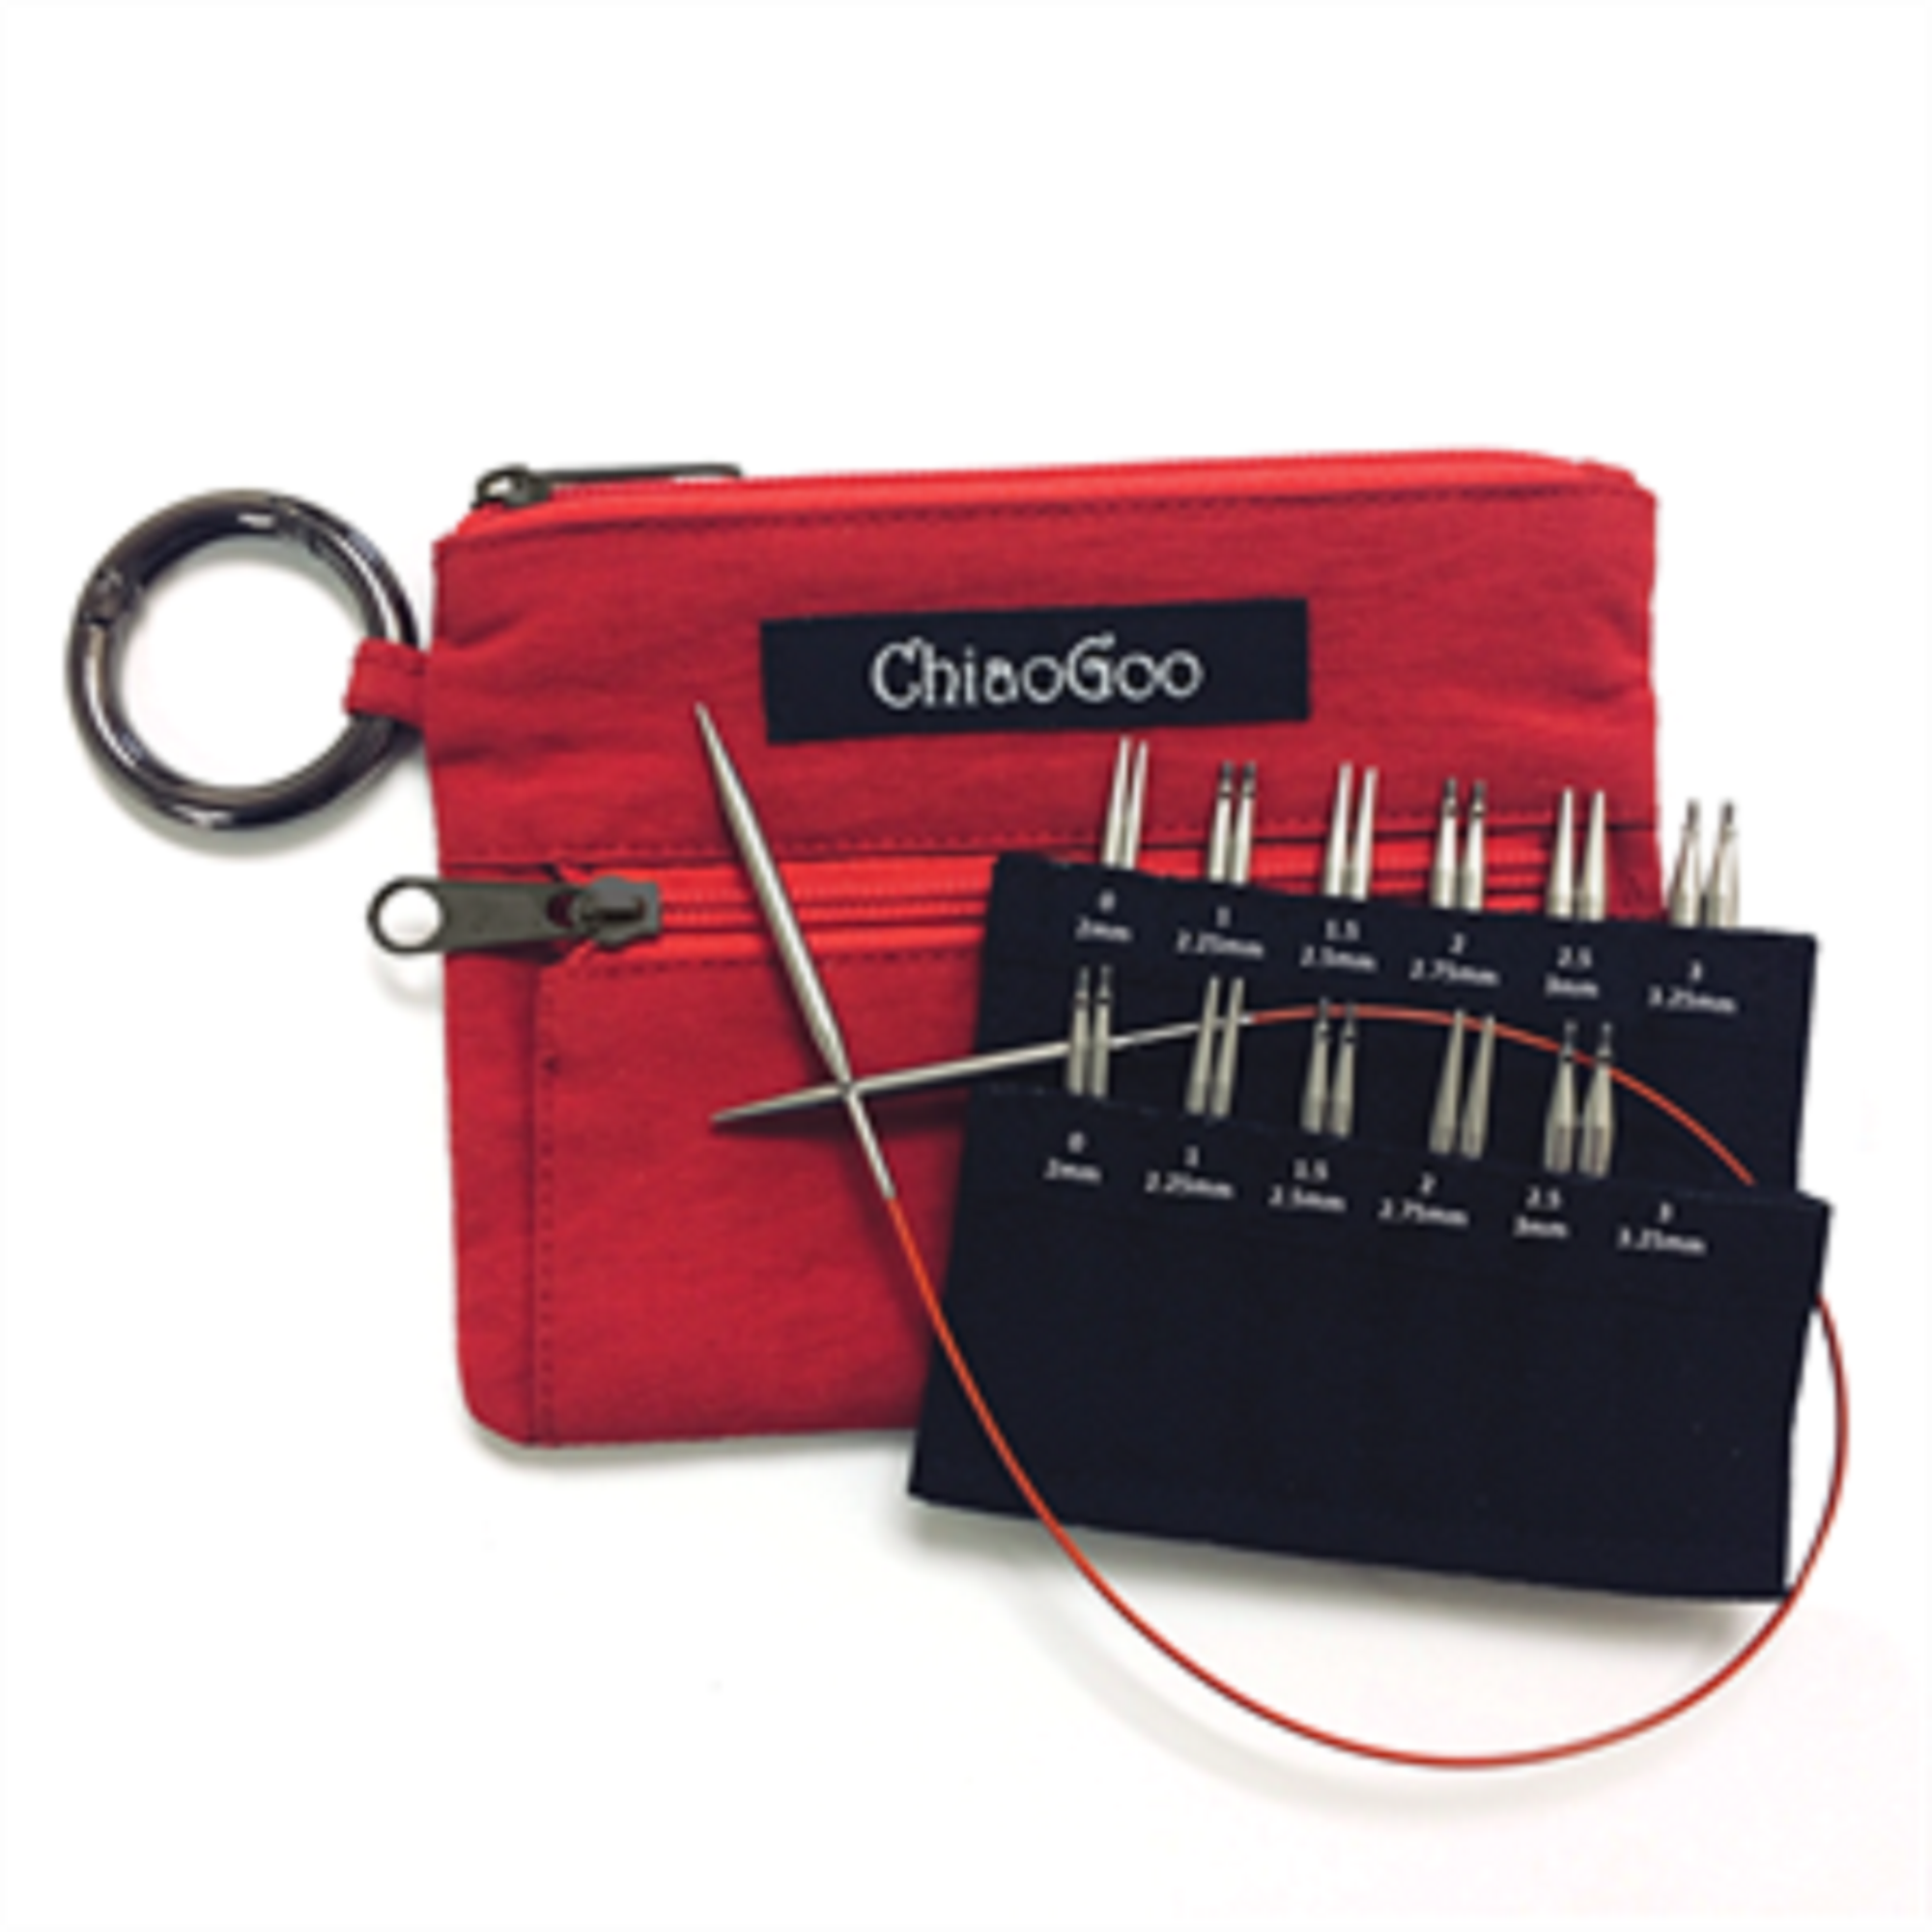 ChiaoGoo Twist Shortie Interchangeable Knitting Needle Set